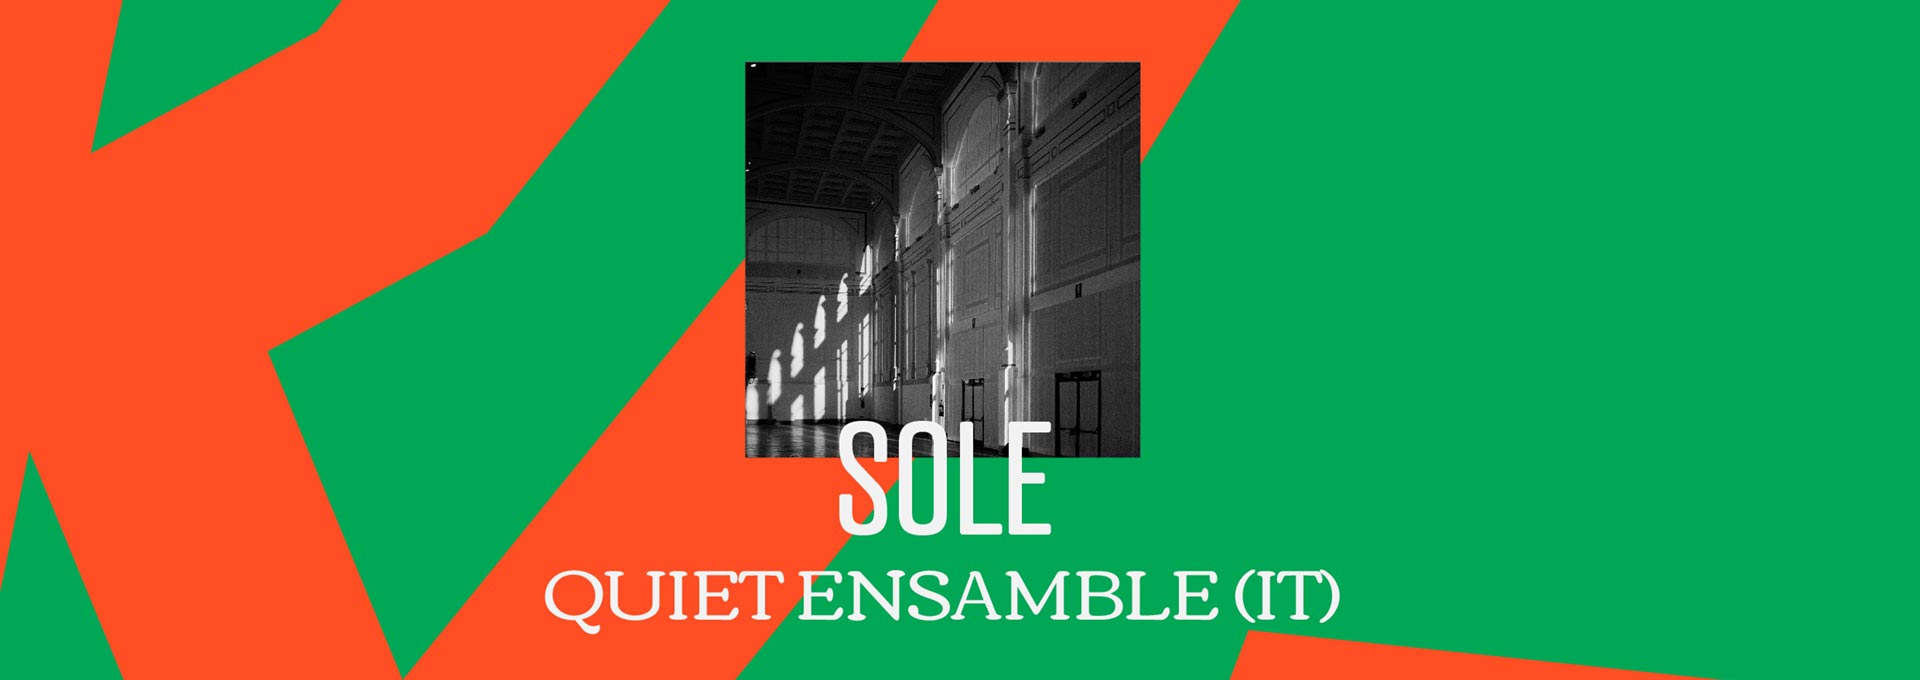 Quiet Ensemble | Sole (IT)